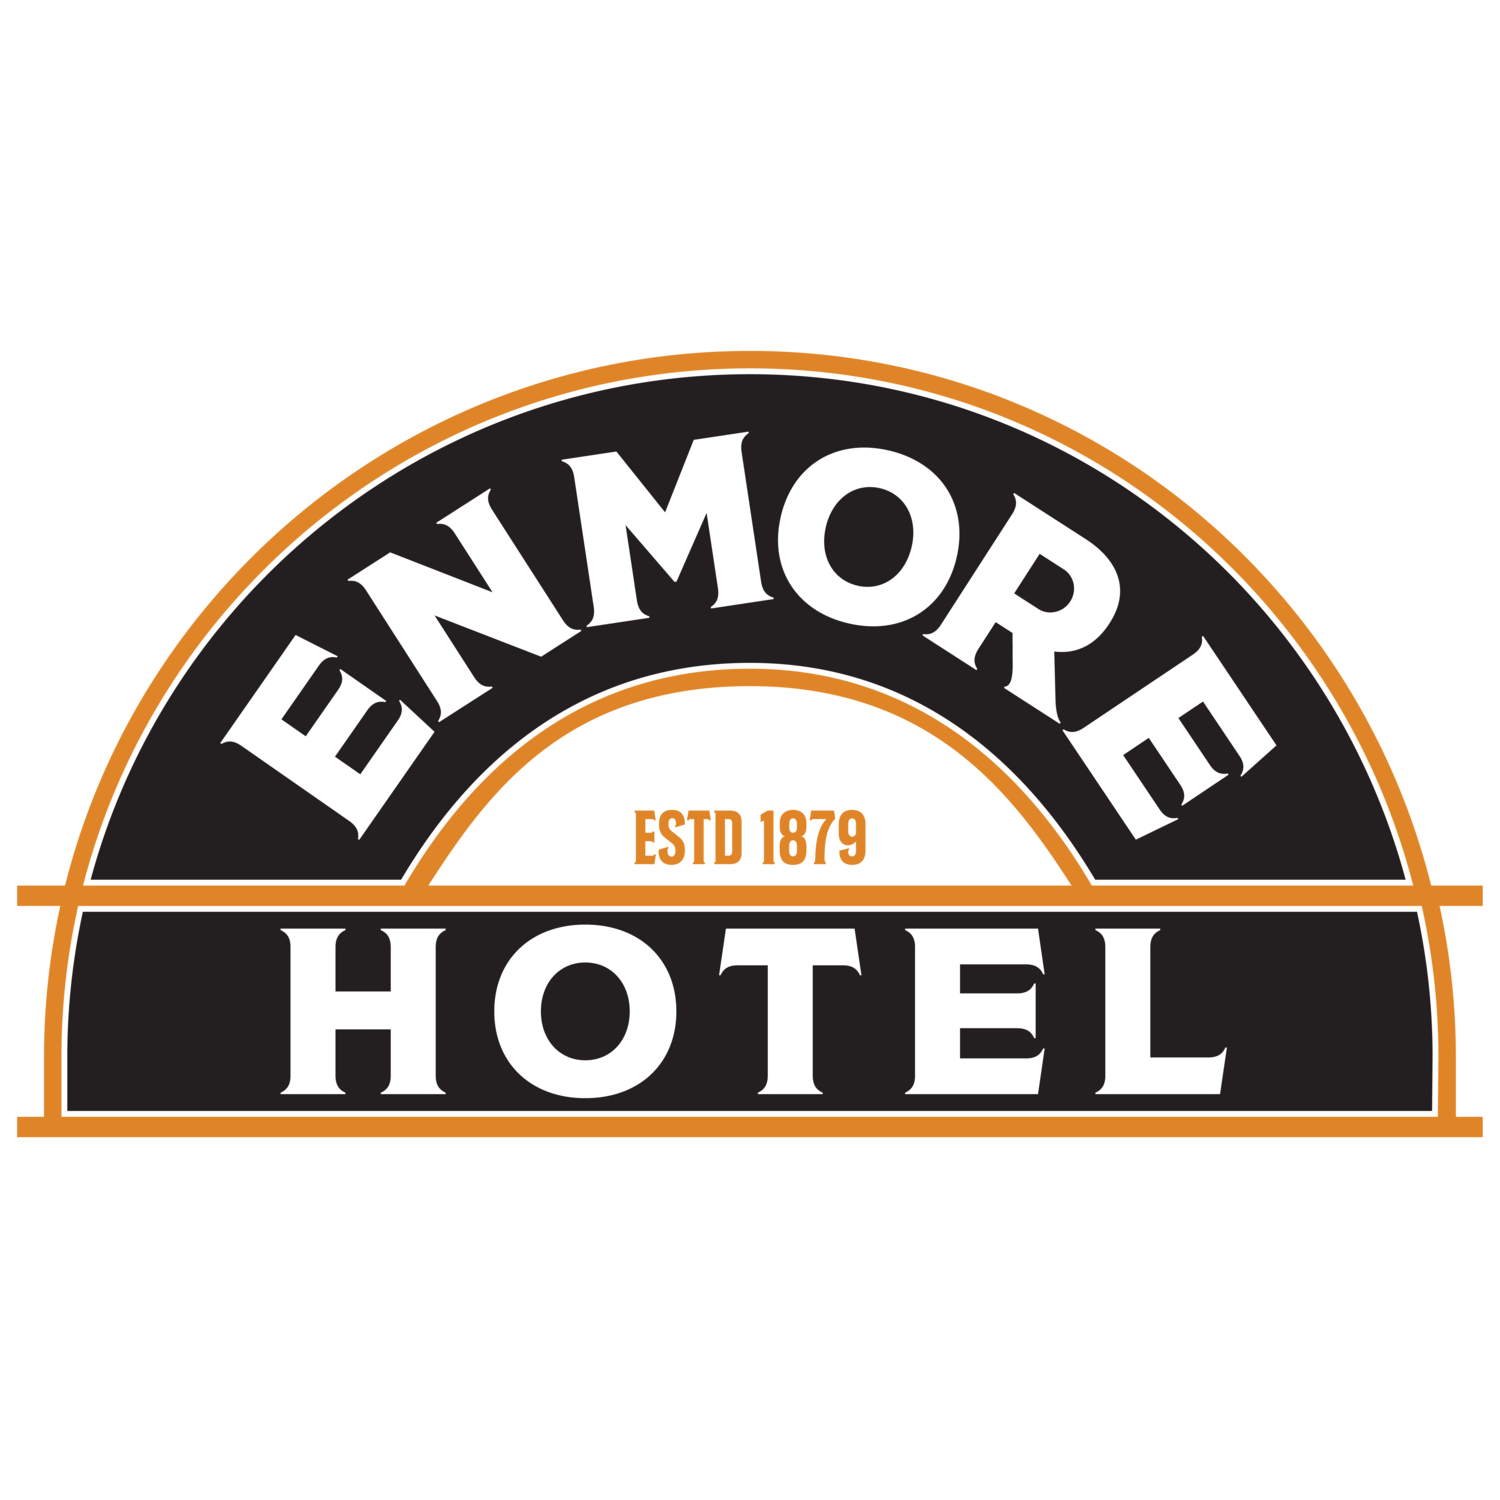 Enmore Hotel